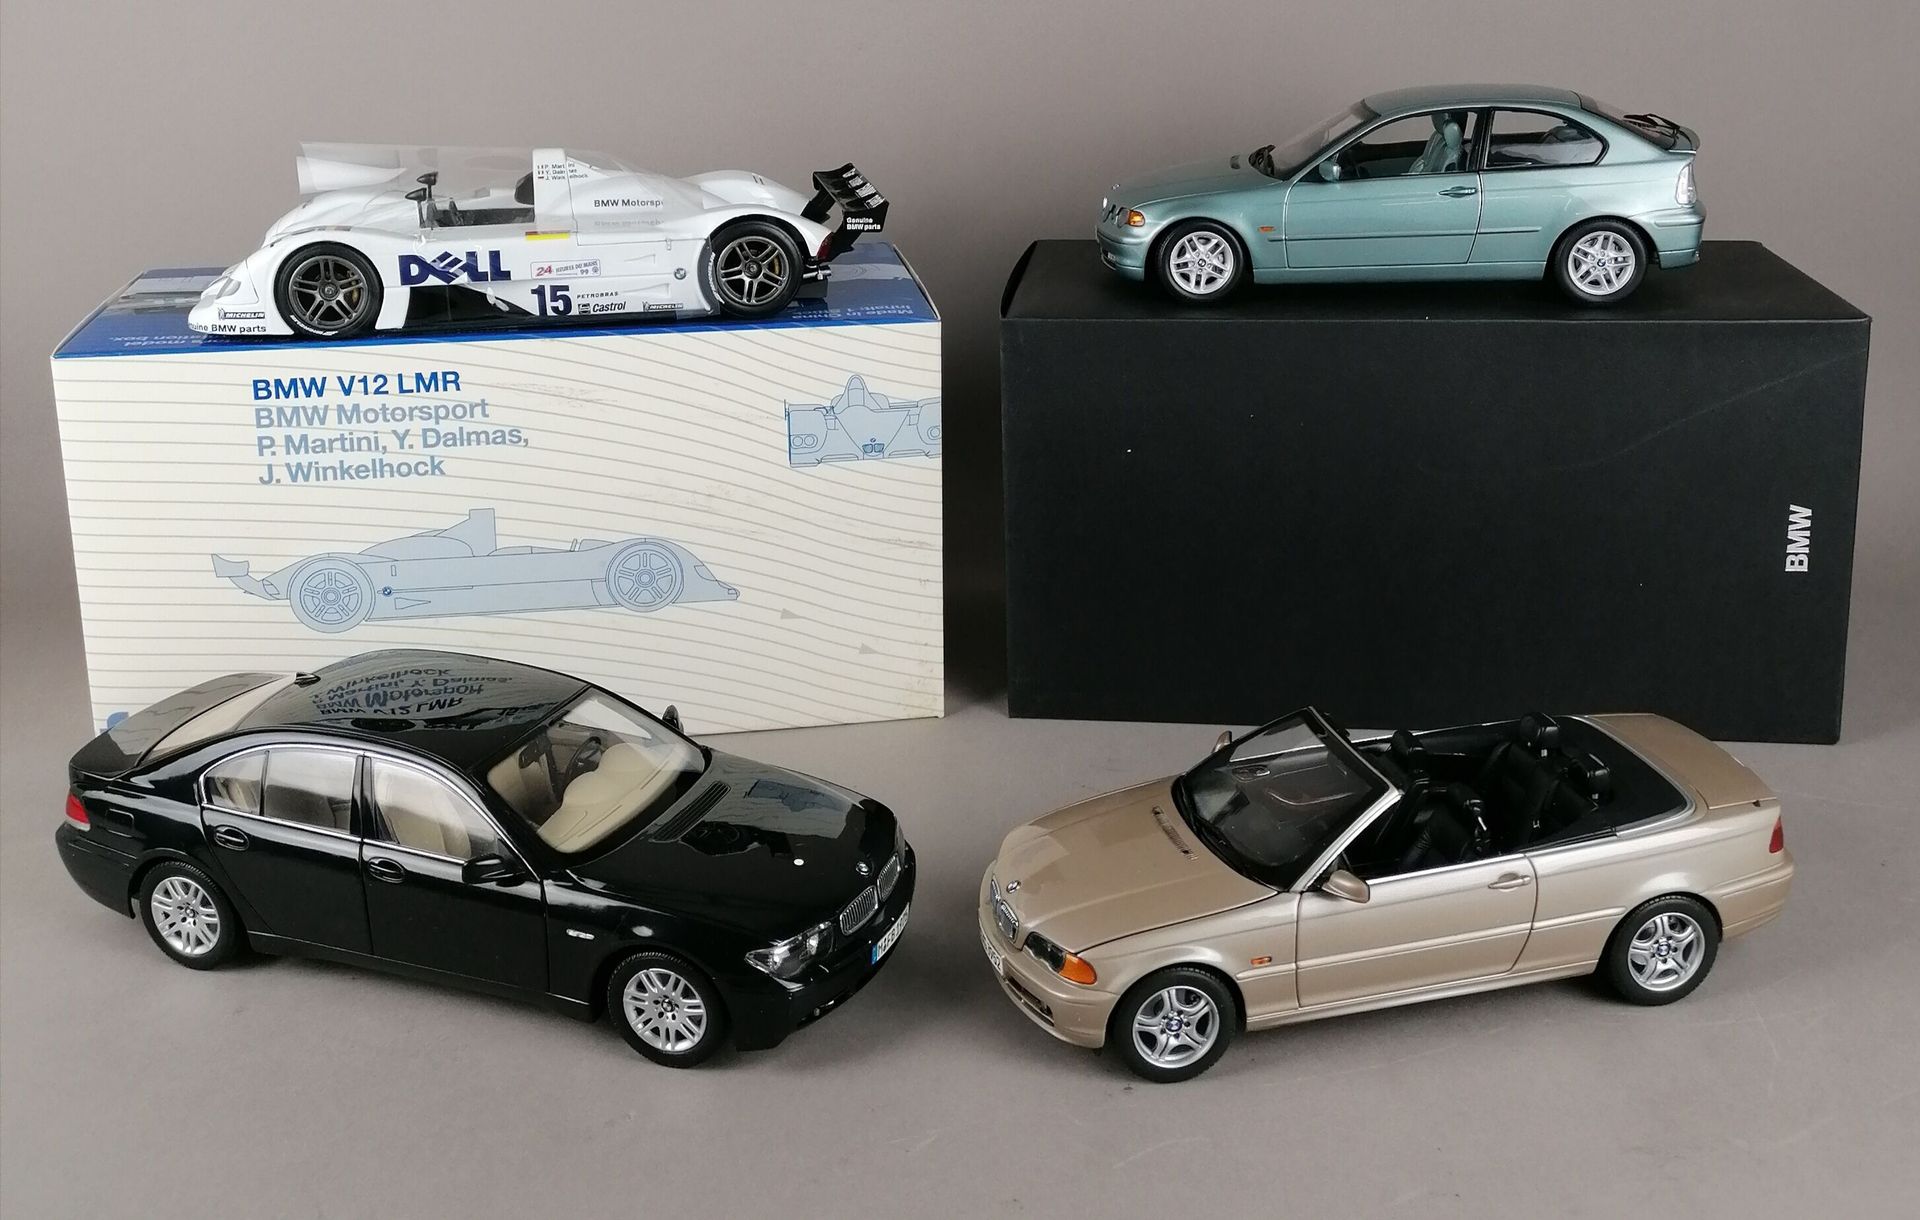 Null BMW - QUATTRO BMW in scala 1/18:

1x V12 LMR

1x Serie 7

1x 325Ti compatto&hellip;